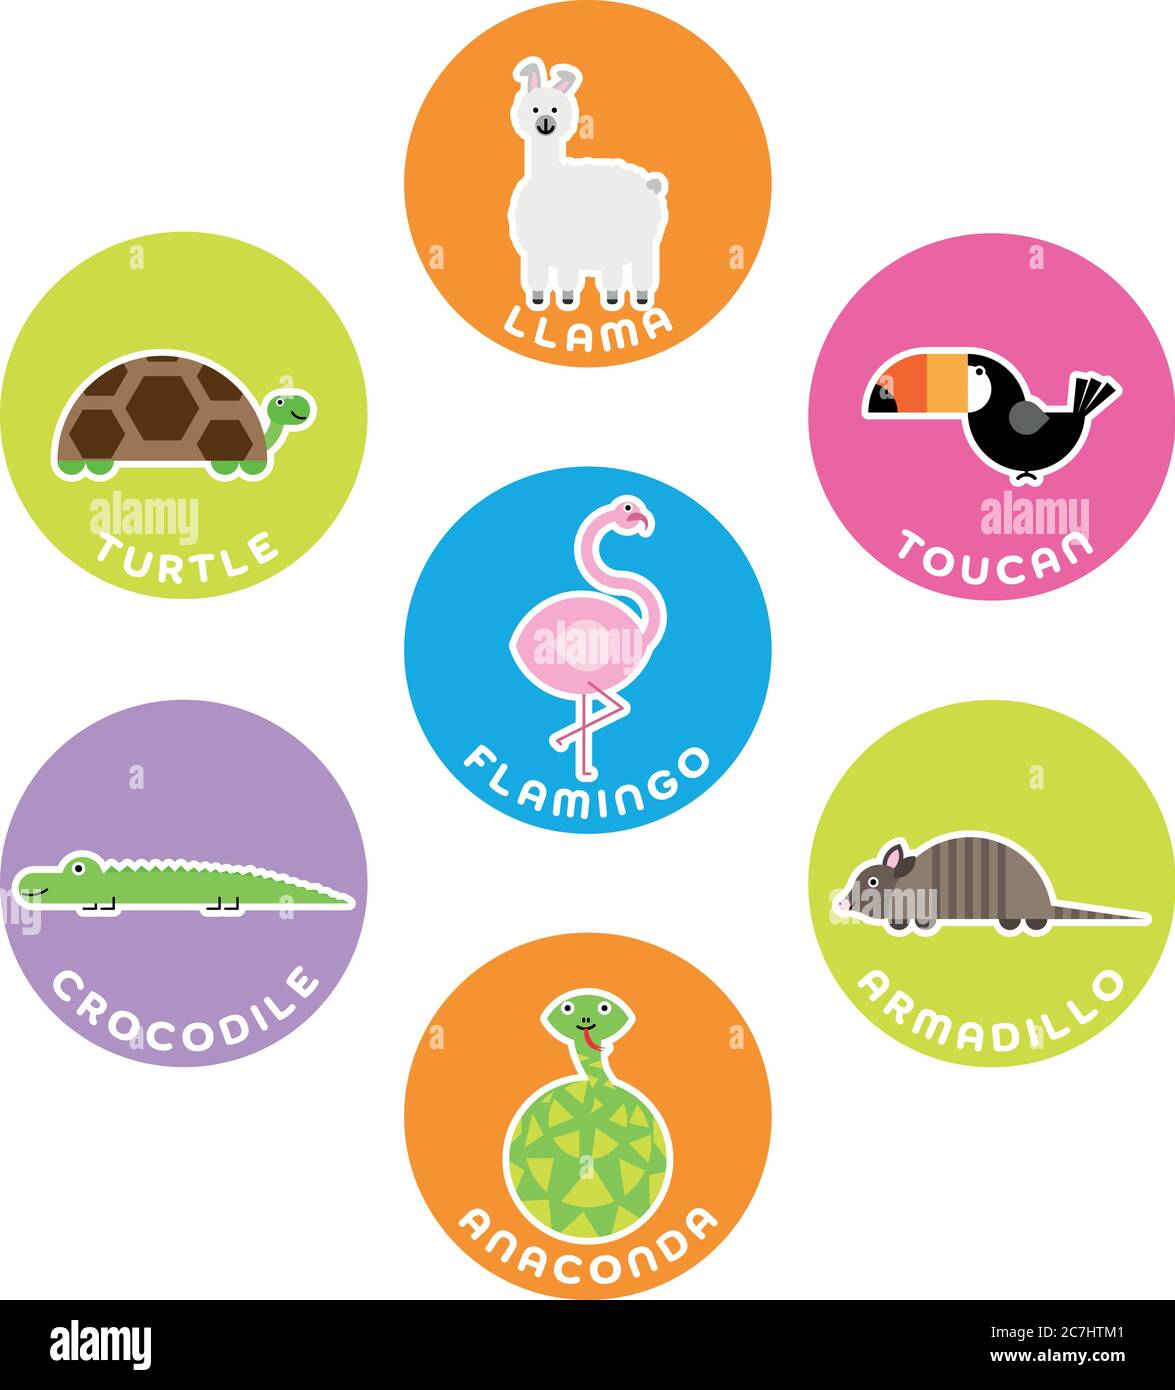 Südamerikanische Wildtiersammlung. Set von 7 Comic-Figuren im Kreis mit Namensschildern. Vektorgrafik. Stock Vektor